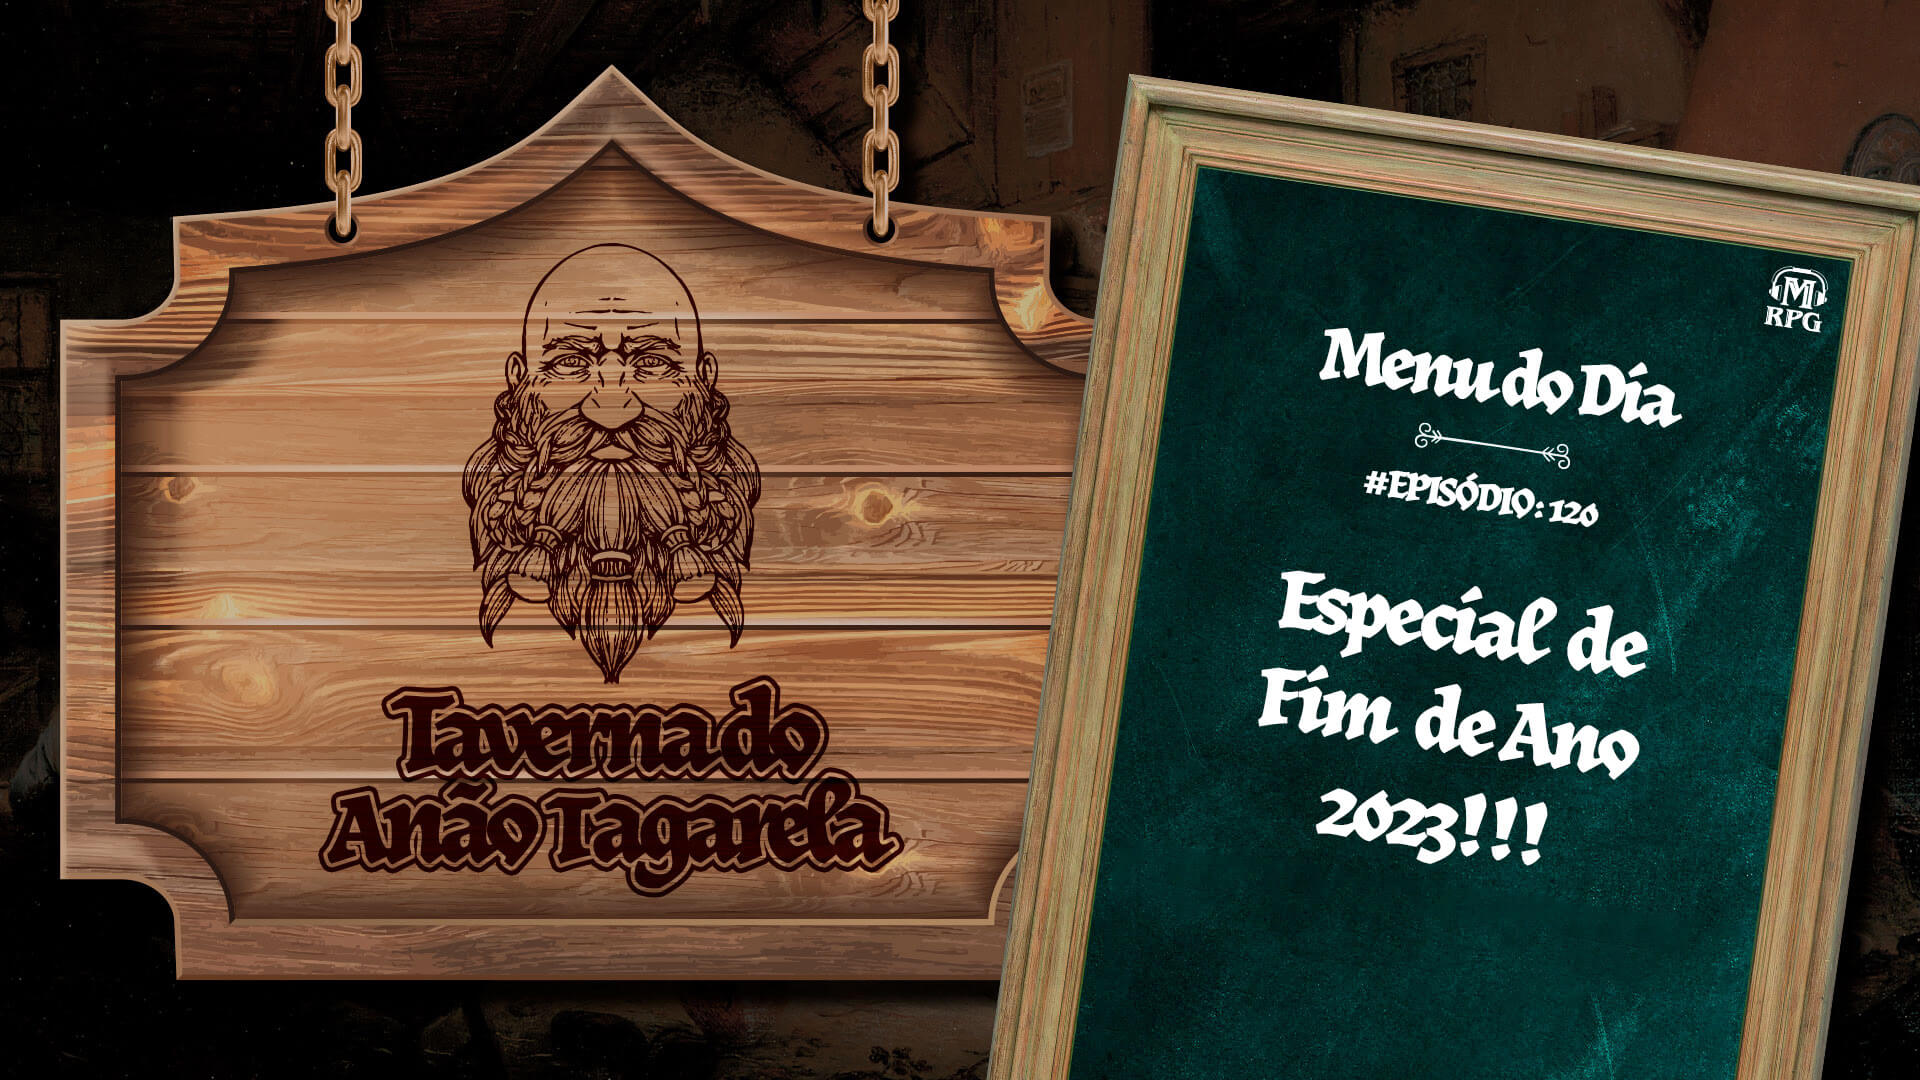 Especial de Fim de Ano 2023 – Taverna do Anão Tagarela #120